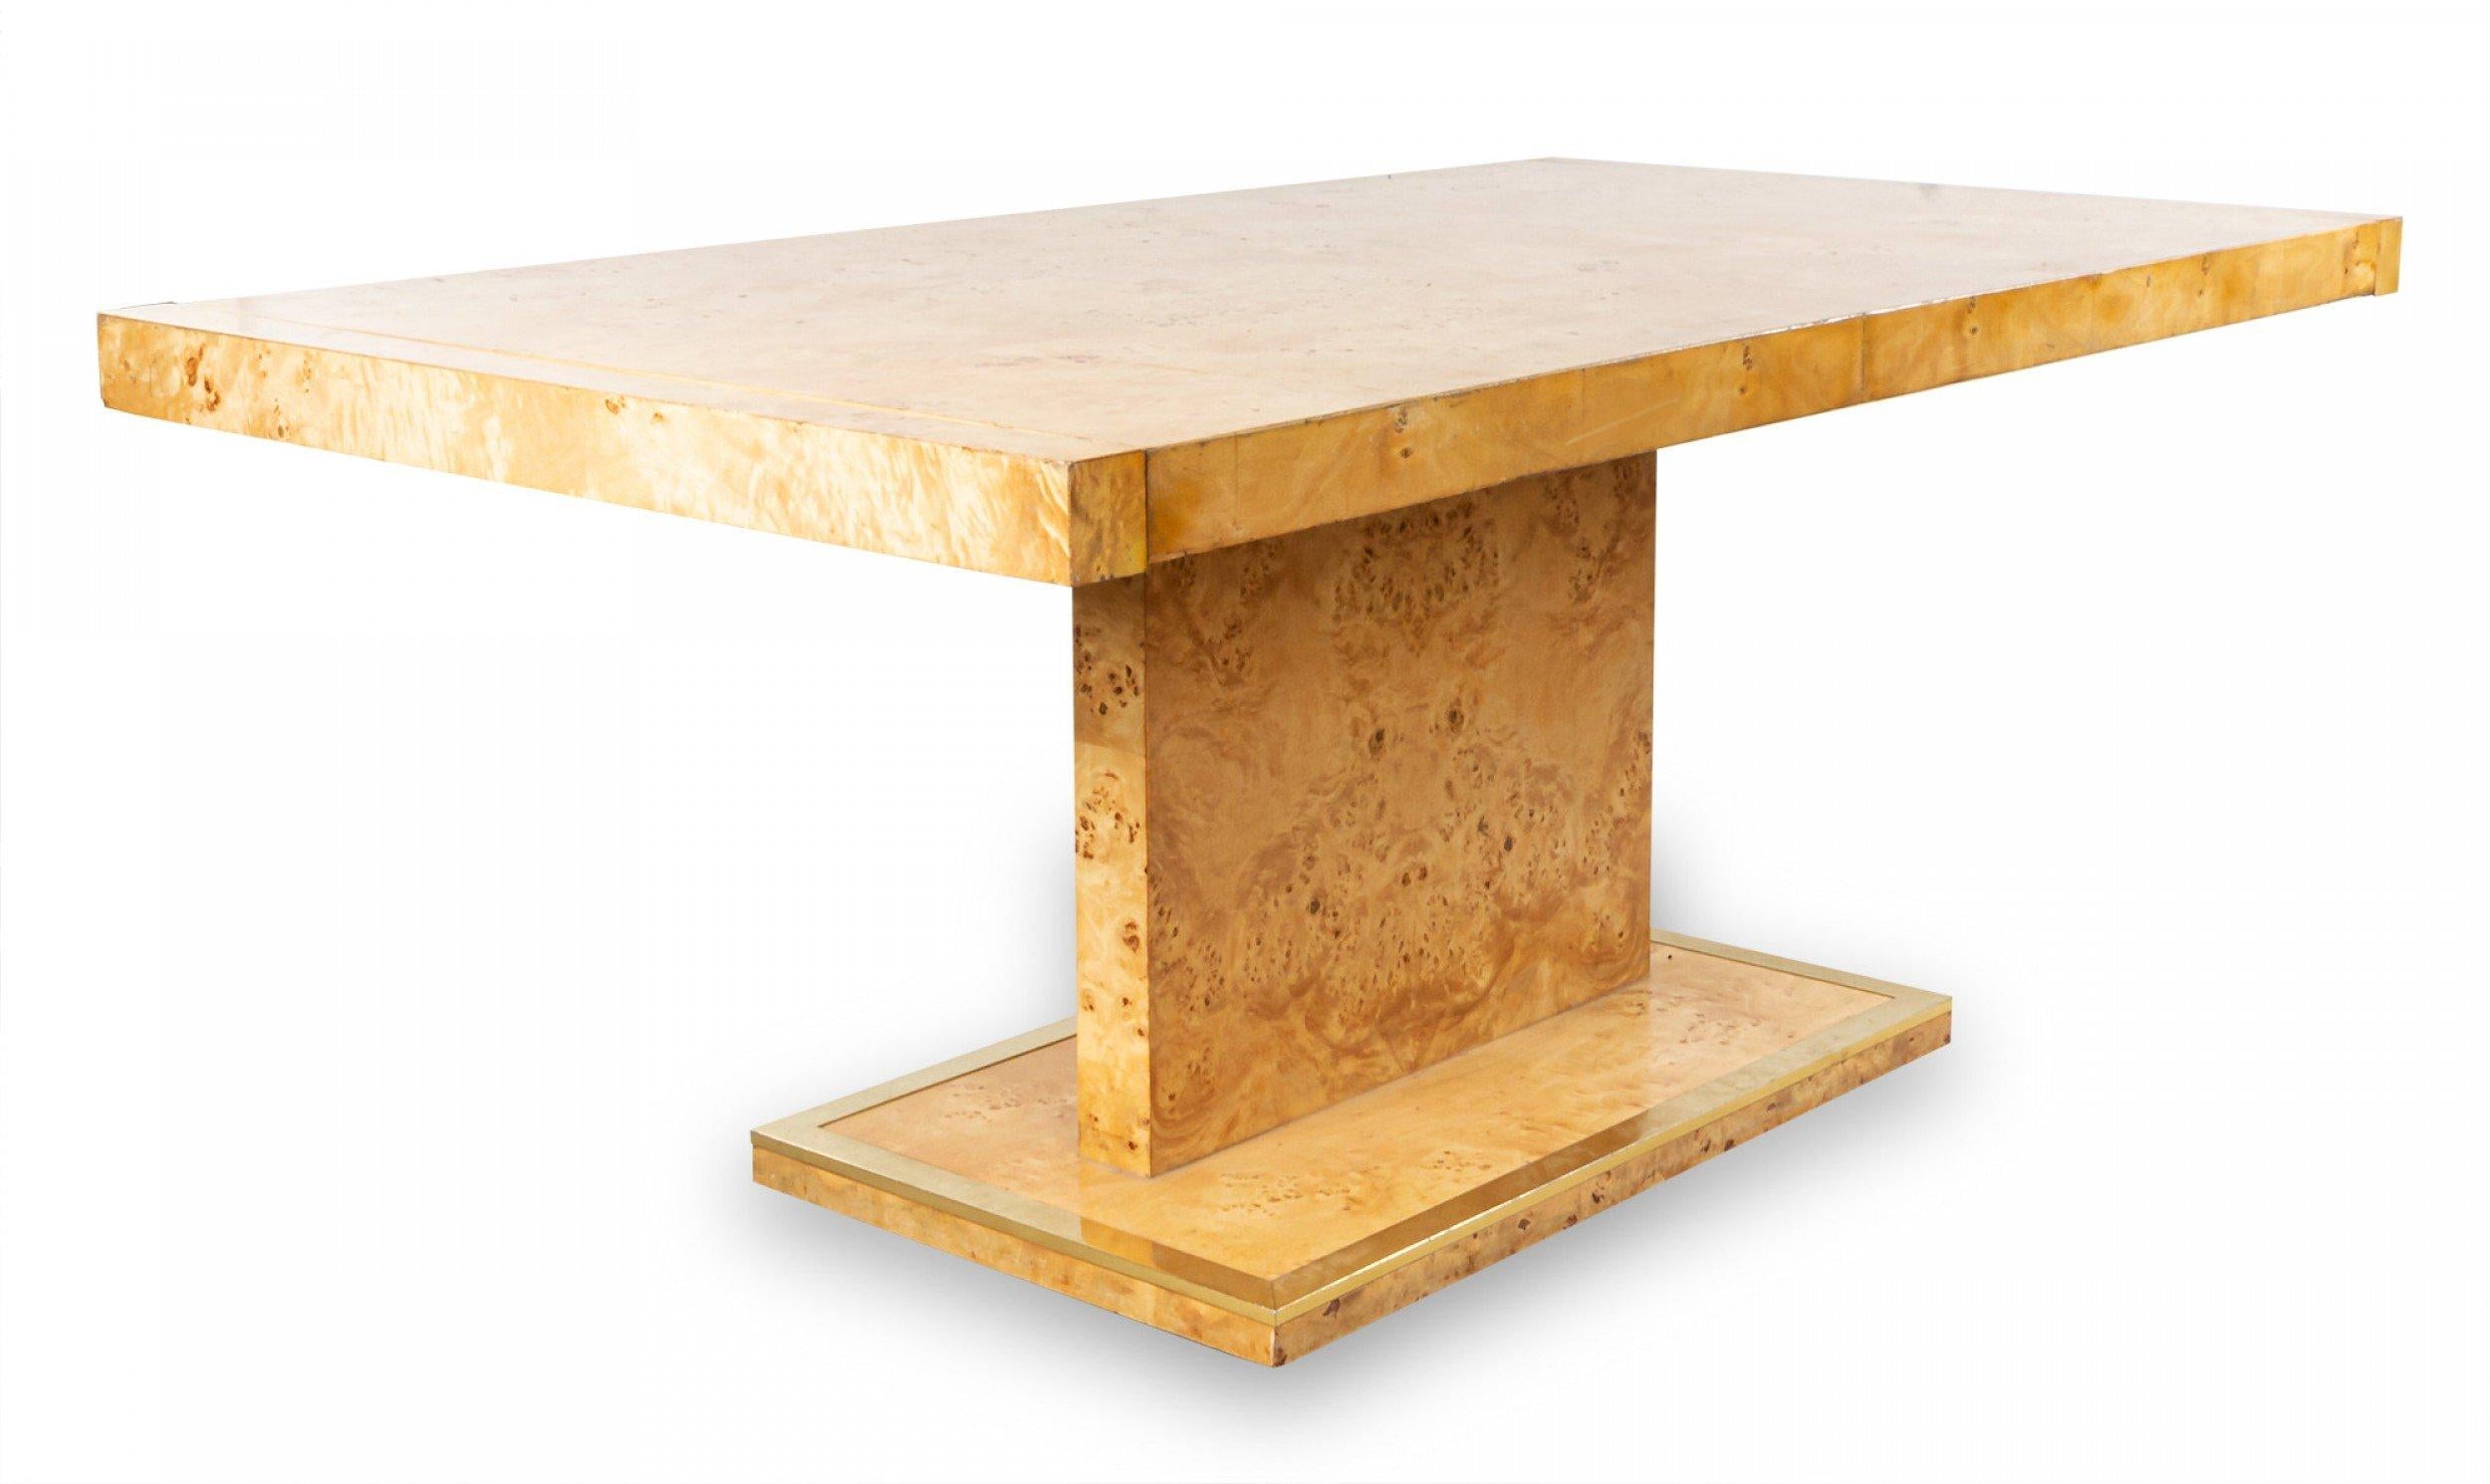 Tavolo da pranzo in legno di radica in stile Milo Baughman, con due foglie allungabili e struttura in metallo sulla base.